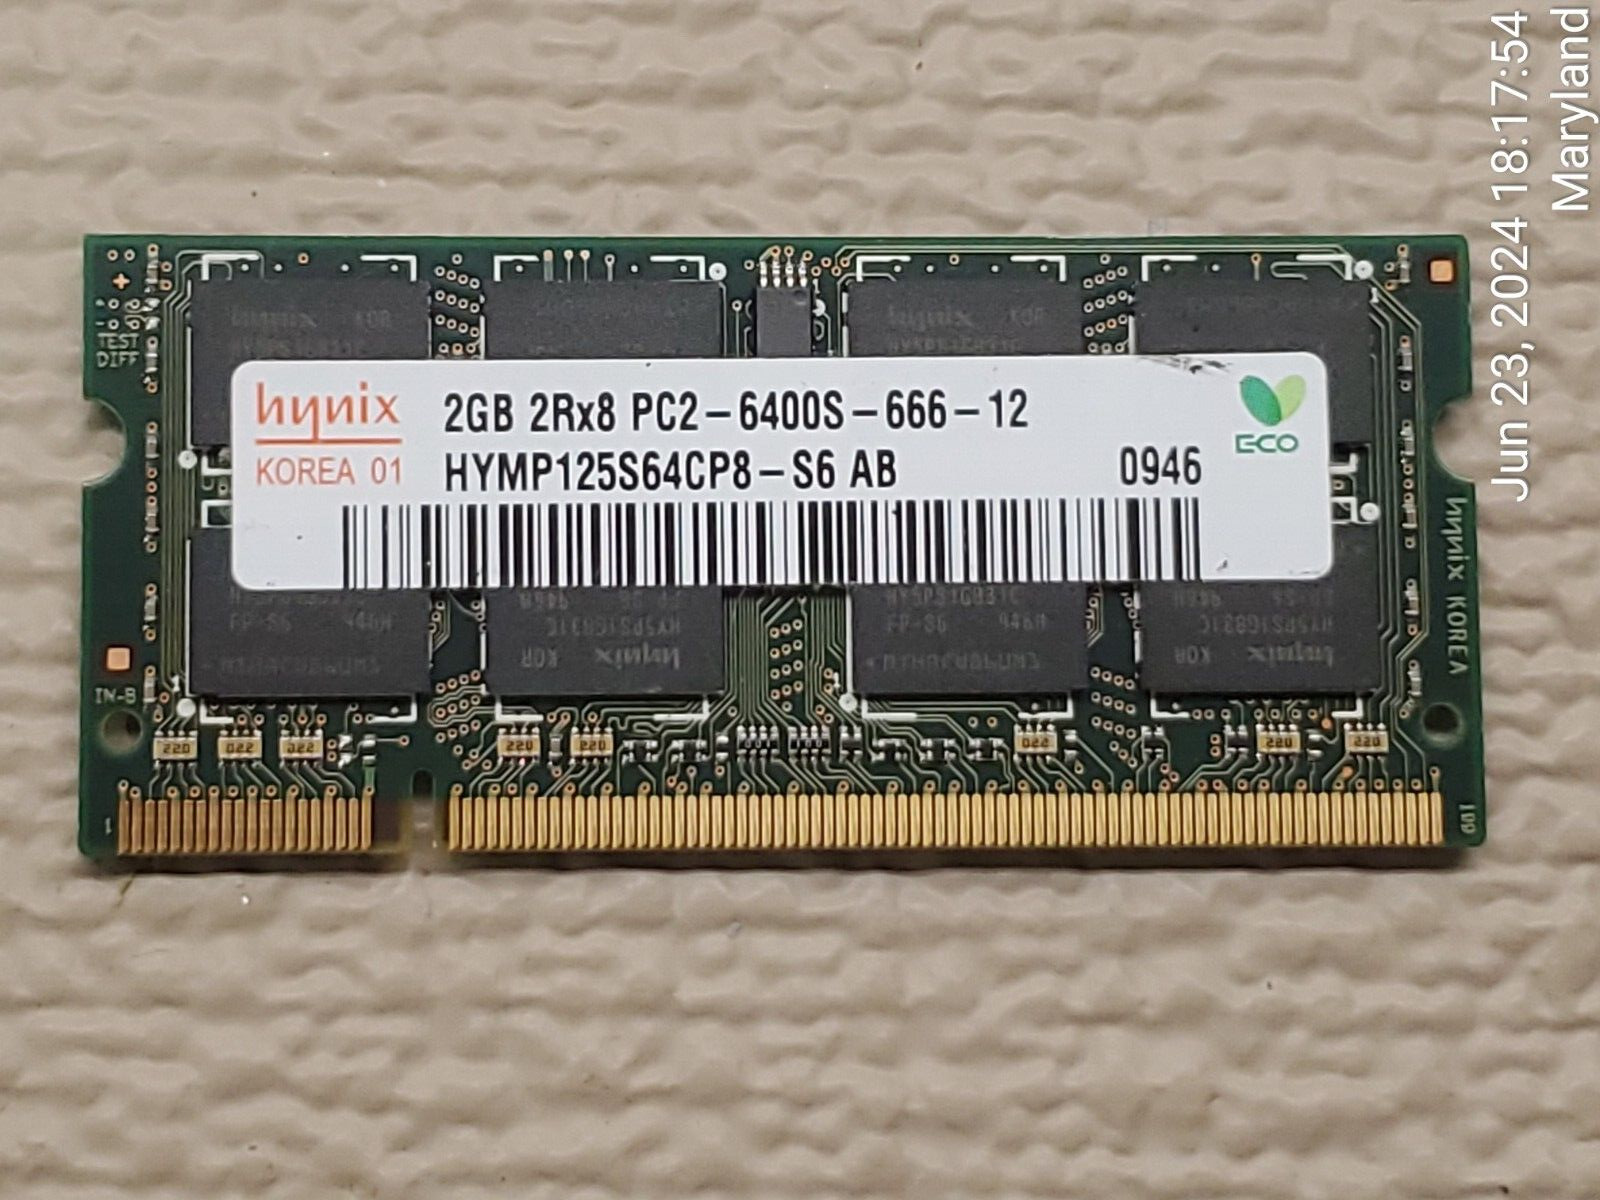 Hynix 2GB 2RX8 PC2-6400S-666-12 Laptop Memory HYMP125S64CP8-S6